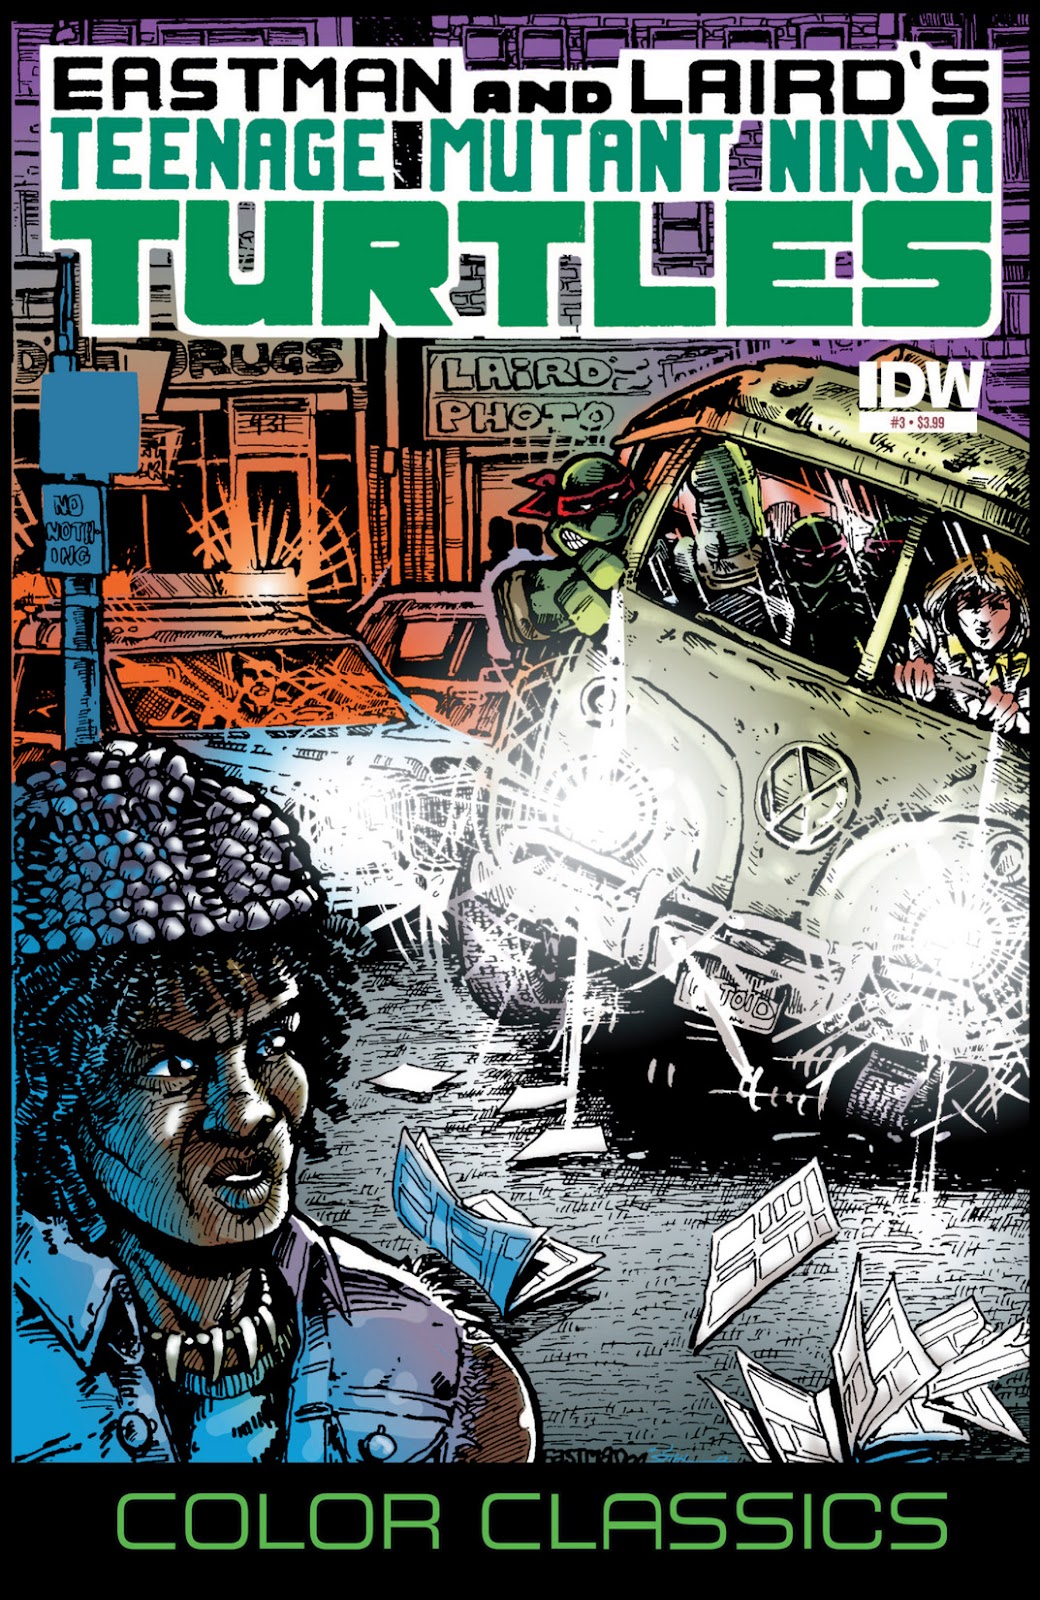 Teenage Mutant Ninja Turtles Color Classics (2012) issue 3 - Page 1